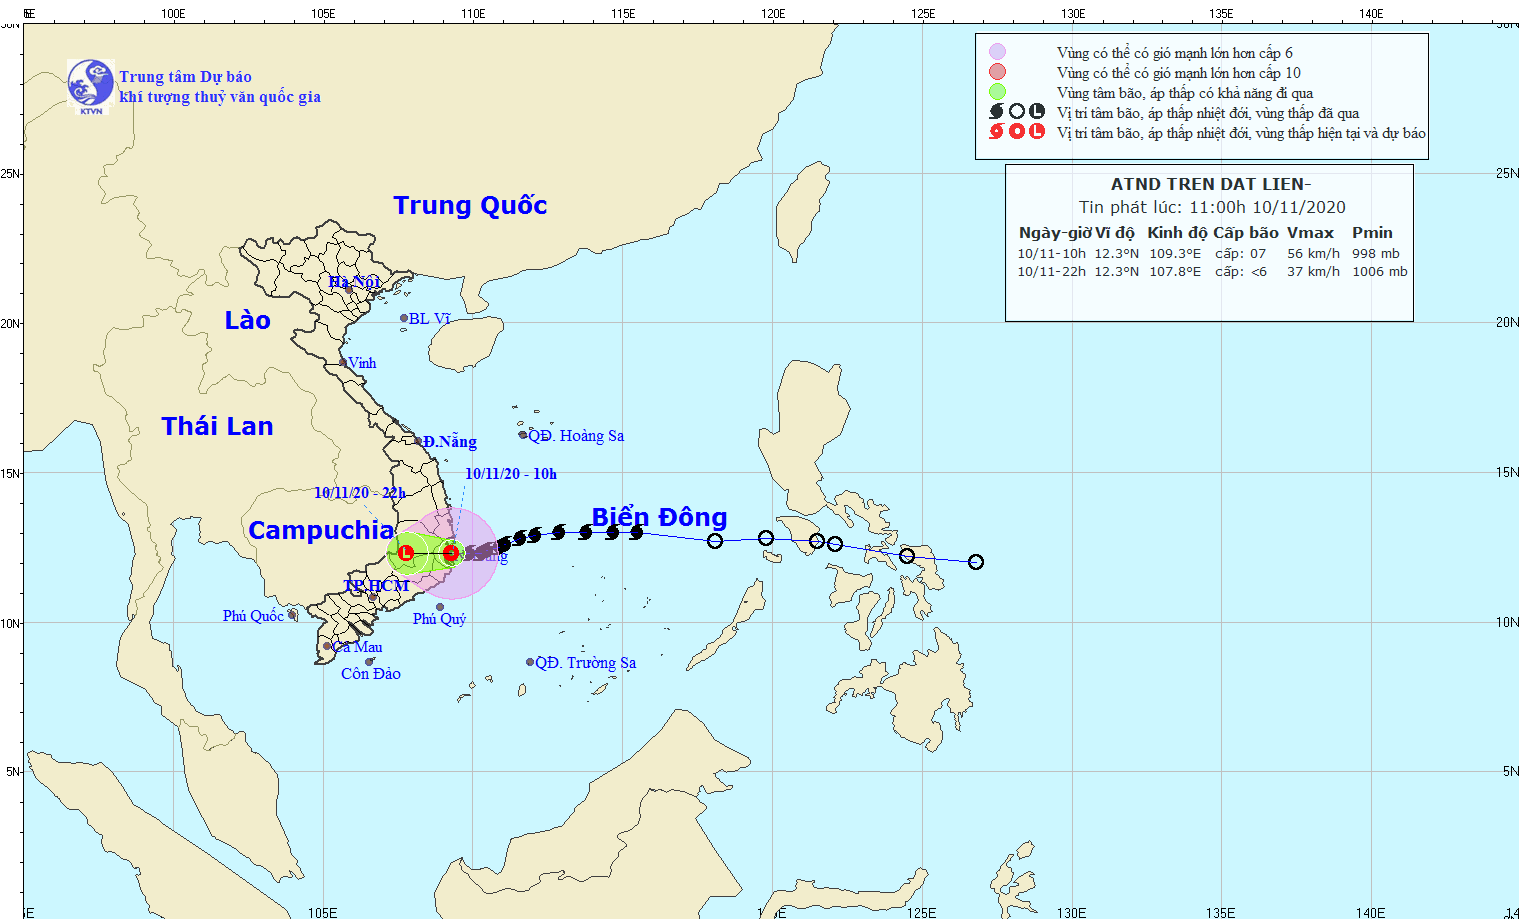 Bão số 13 mạnh gần như bão số 9, dự báo vào biển Đông với gió cấp 12, giật cấp 15 - Ảnh 1.